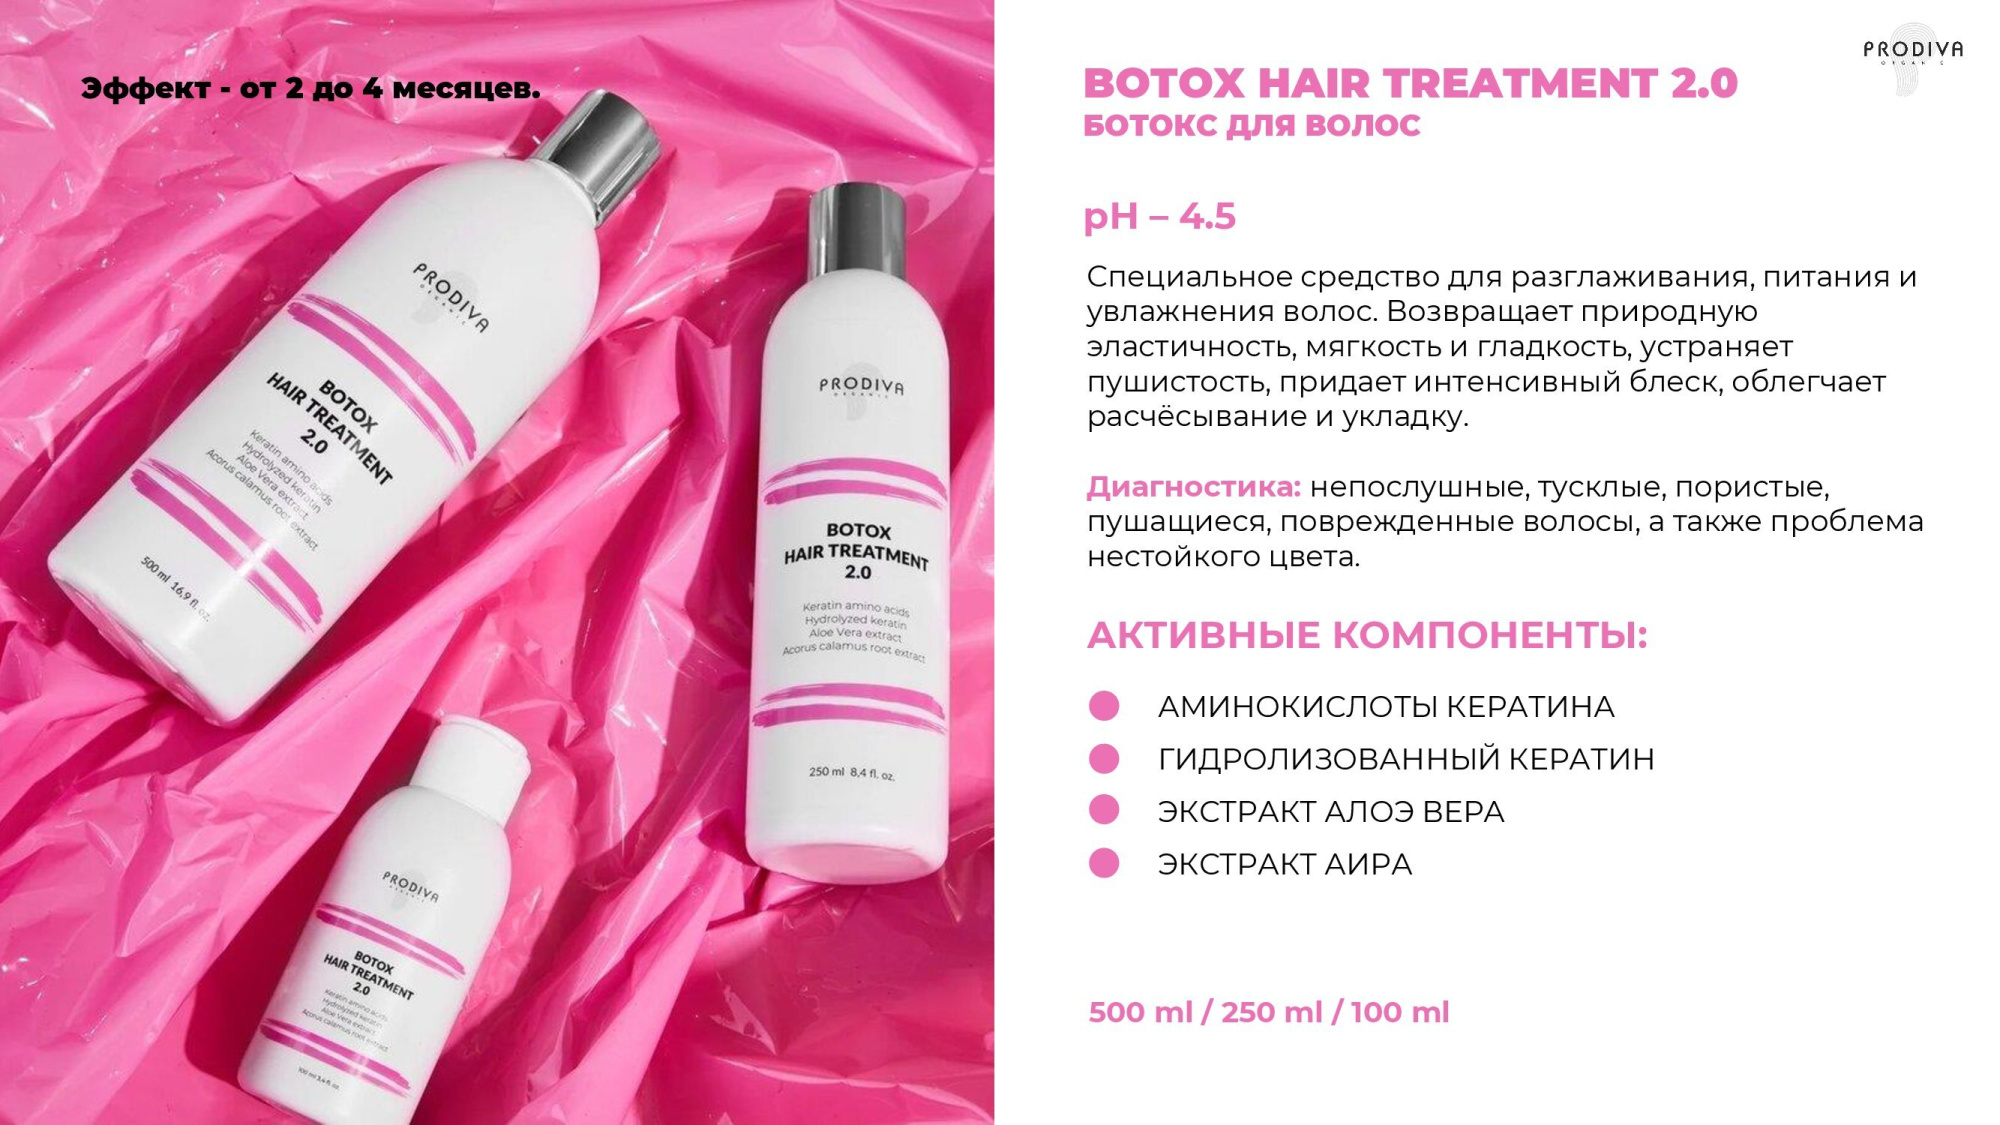 Глянцевый ботокс для волос PRODIVA Botox Hair Treatment 2.0, саше 30 мл